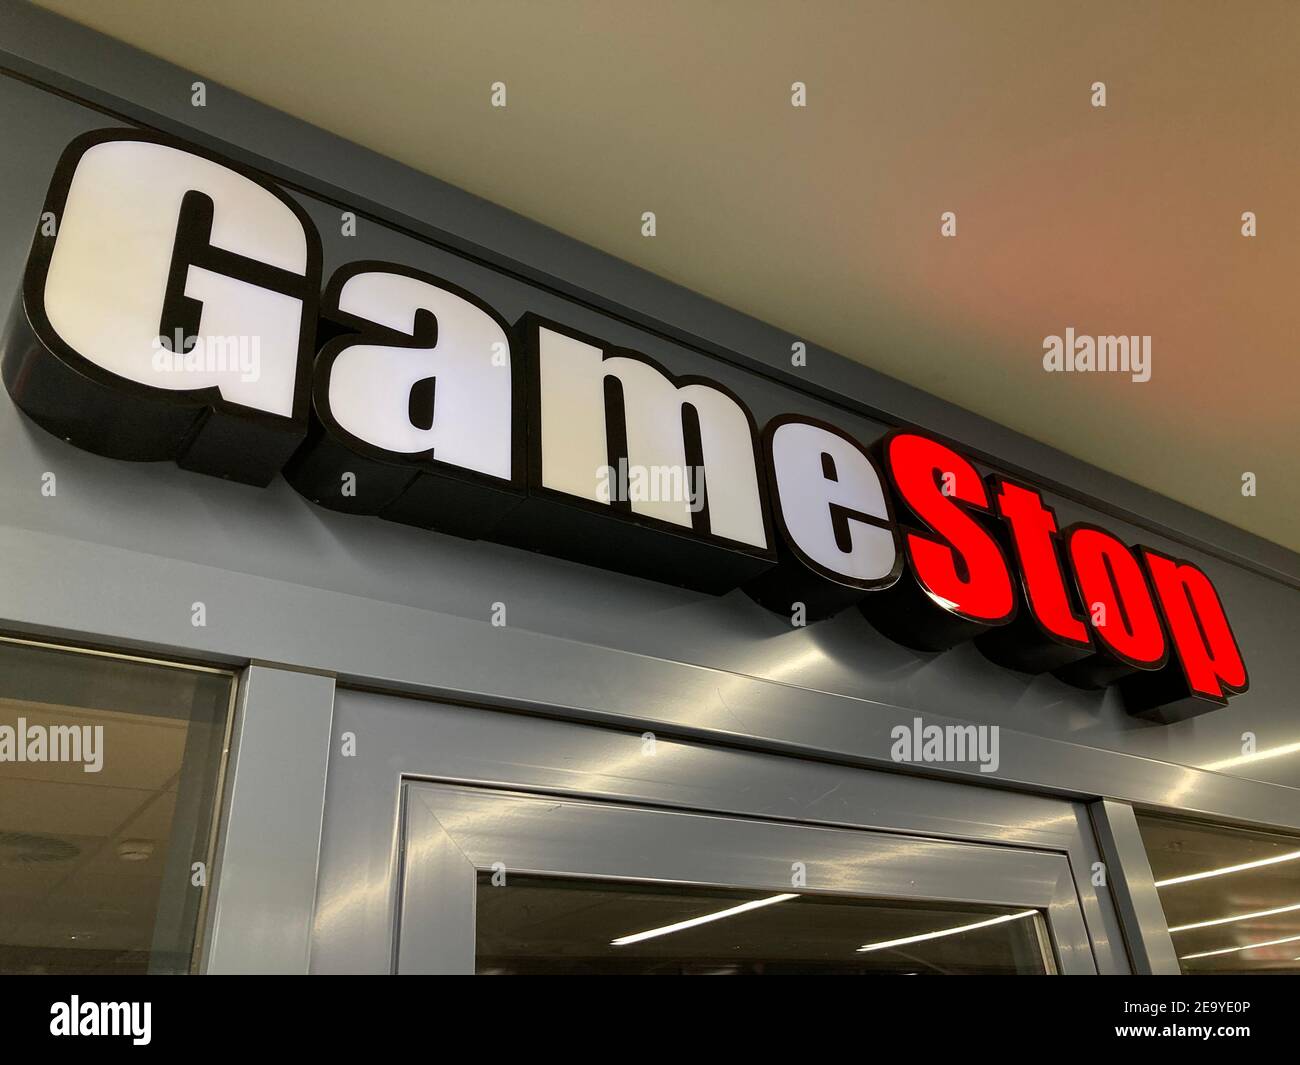 Zug, Suisse - 6 février 2021 : logo GameStop accroché sur une entrée de magasin à Zug, Suisse. Gamestop est une société américaine qui vend des VID Banque D'Images